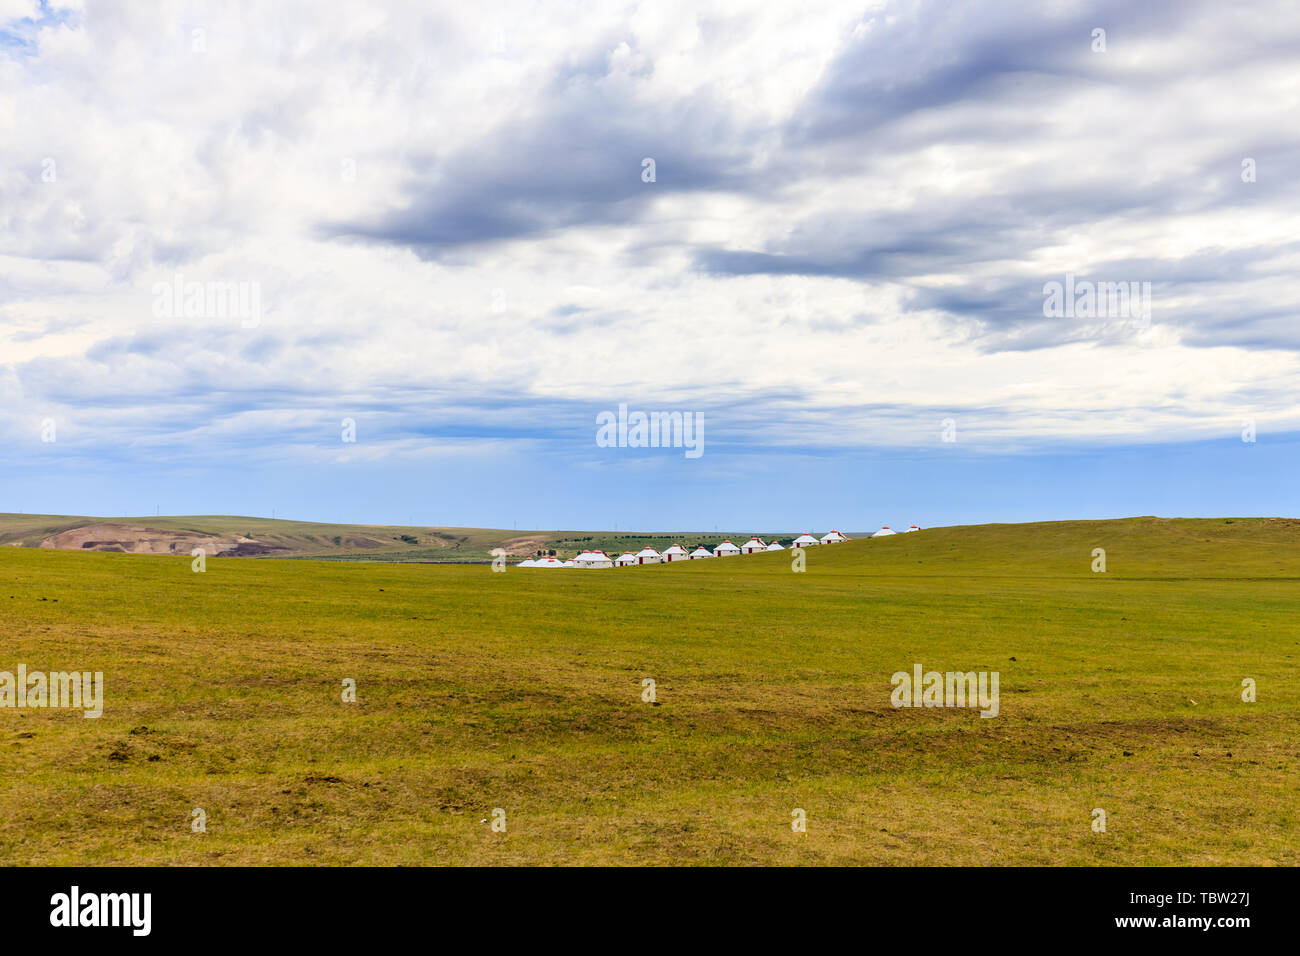 Hulunbuir Bayan Hushuo Mongolian tribe, Inner Mongolia Stock Photo